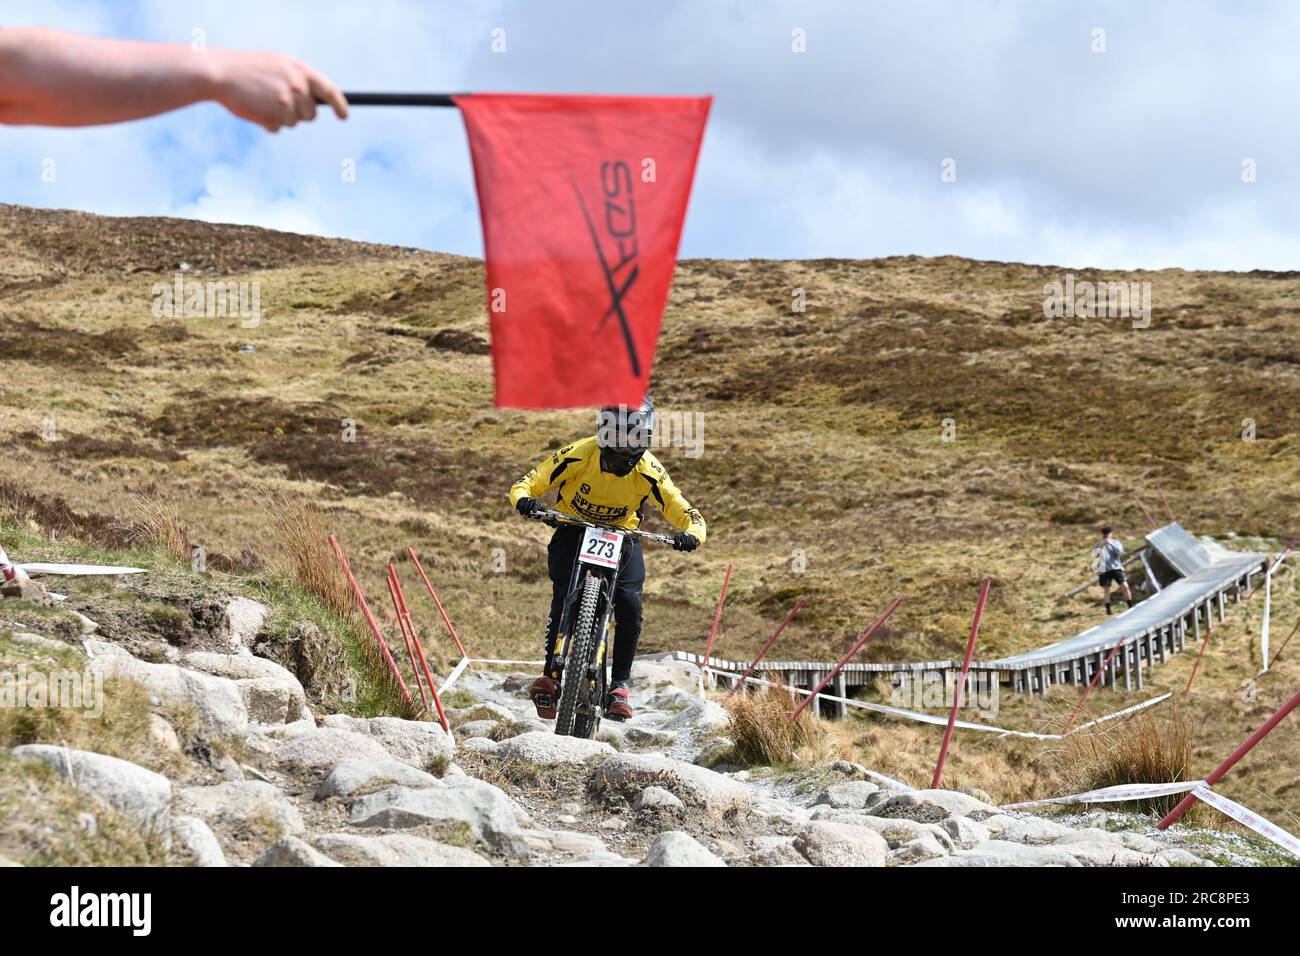 Drapeau rouge à la course de VTT de descente SDA signifiant que tous les coureurs doivent s'arrêter - fort William, Écosse, Royaume-Uni Banque D'Images